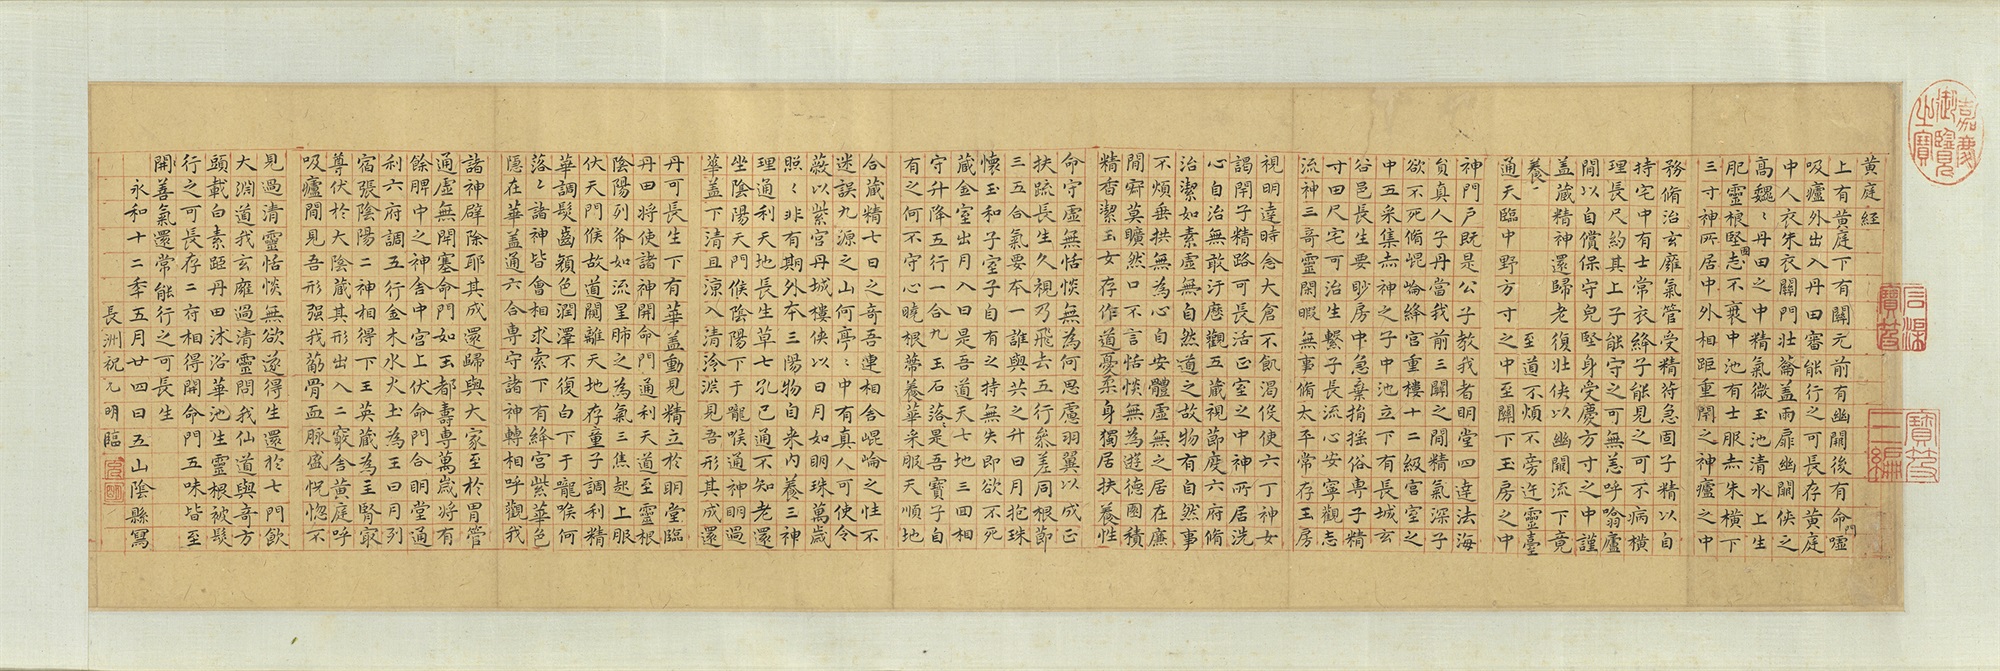 Transcription of Huangting Jing by Zhu Yunmingpreview